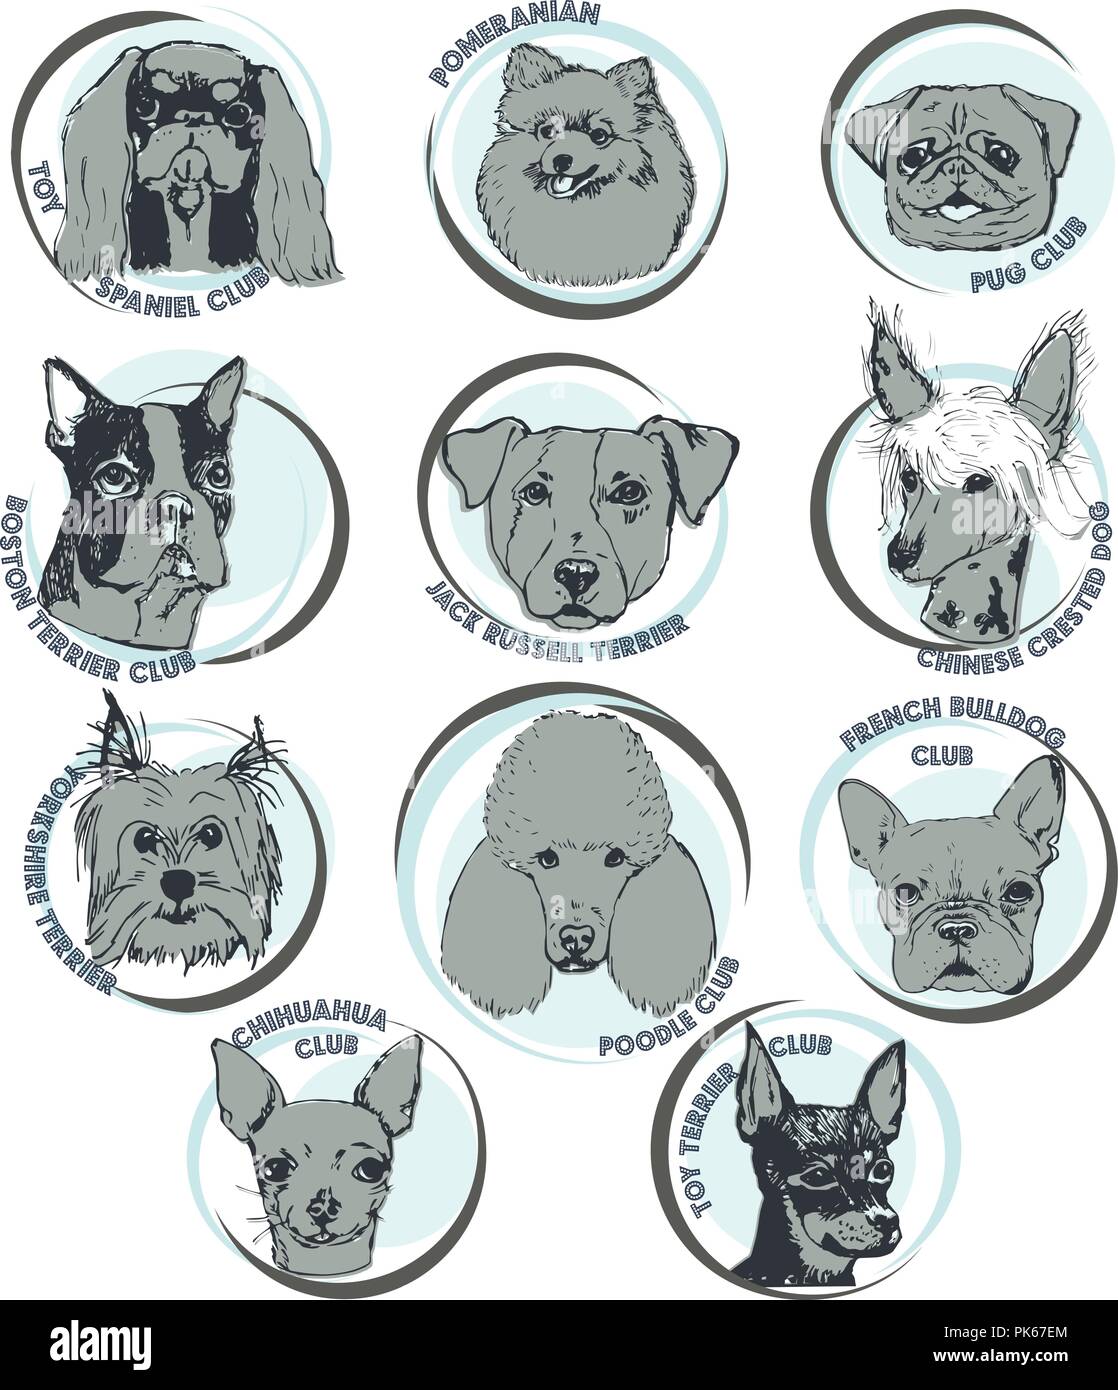 Hund Vector Illustration. Hand Hund Rasse Porträts mit Namen gezeichnet.  Skizze von Reinrassigen kleine Hunde. T-shirt Druckvorlage für  Hundefreunde. Logo Elemente Stock-Vektorgrafik - Alamy